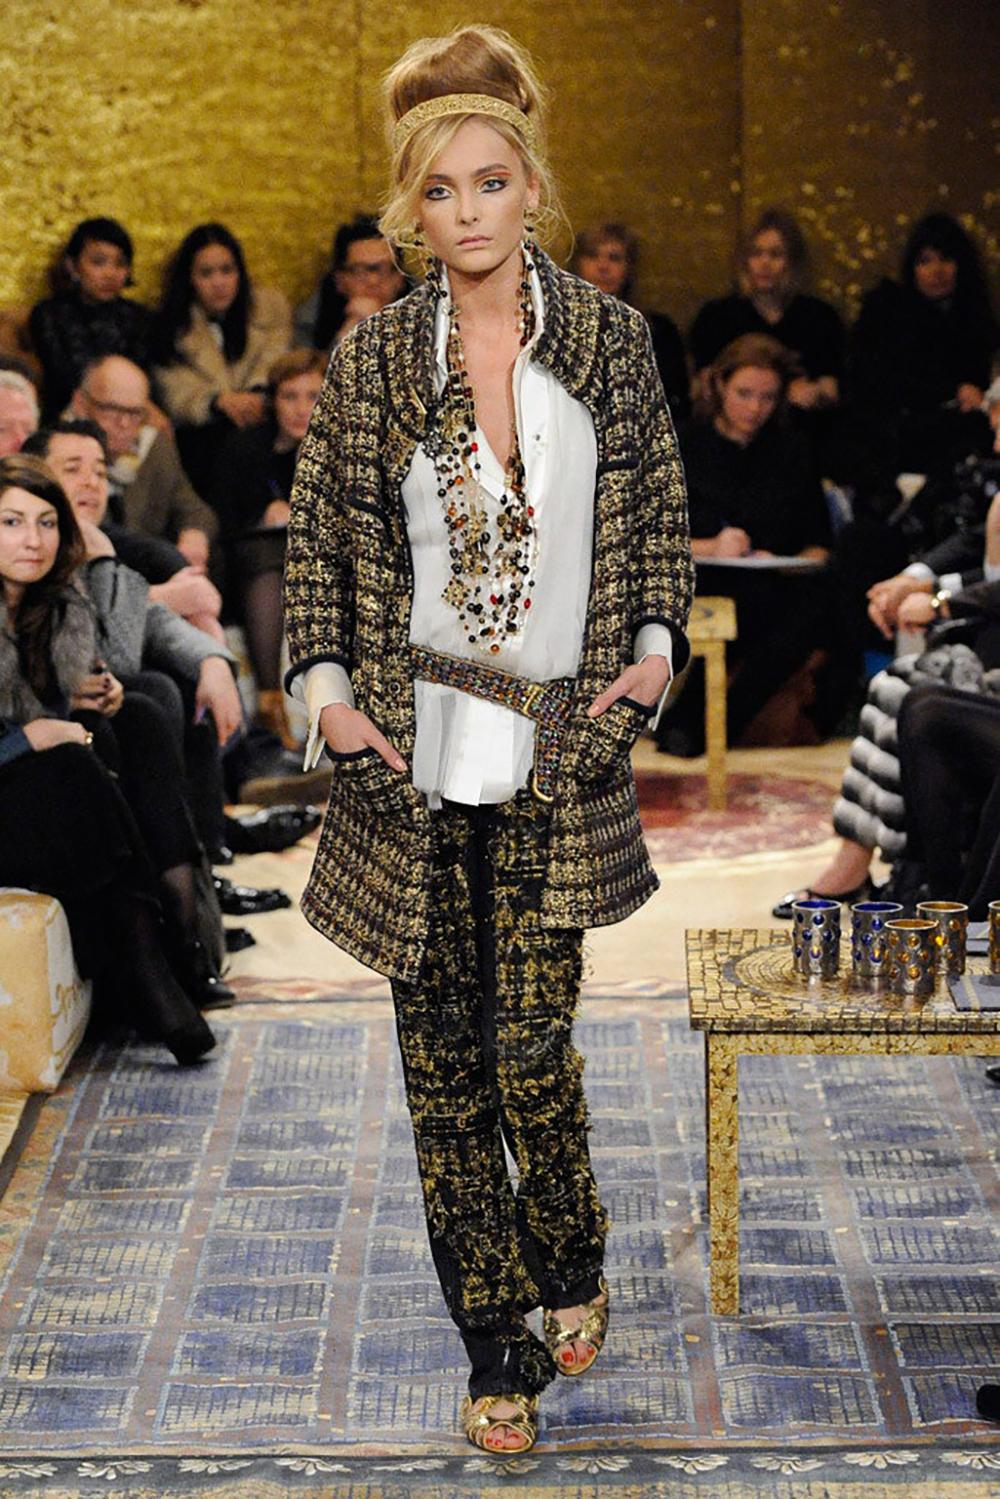 Magnifique robe Chanel avec boutons Gripoix CC jewel from Paris / BYZANCE Collection, metiers d'Art
Le prix de détail était de plus de 5 500 $.
Taille 46 FR. L'état est impeccable, il n'a pas été porté.